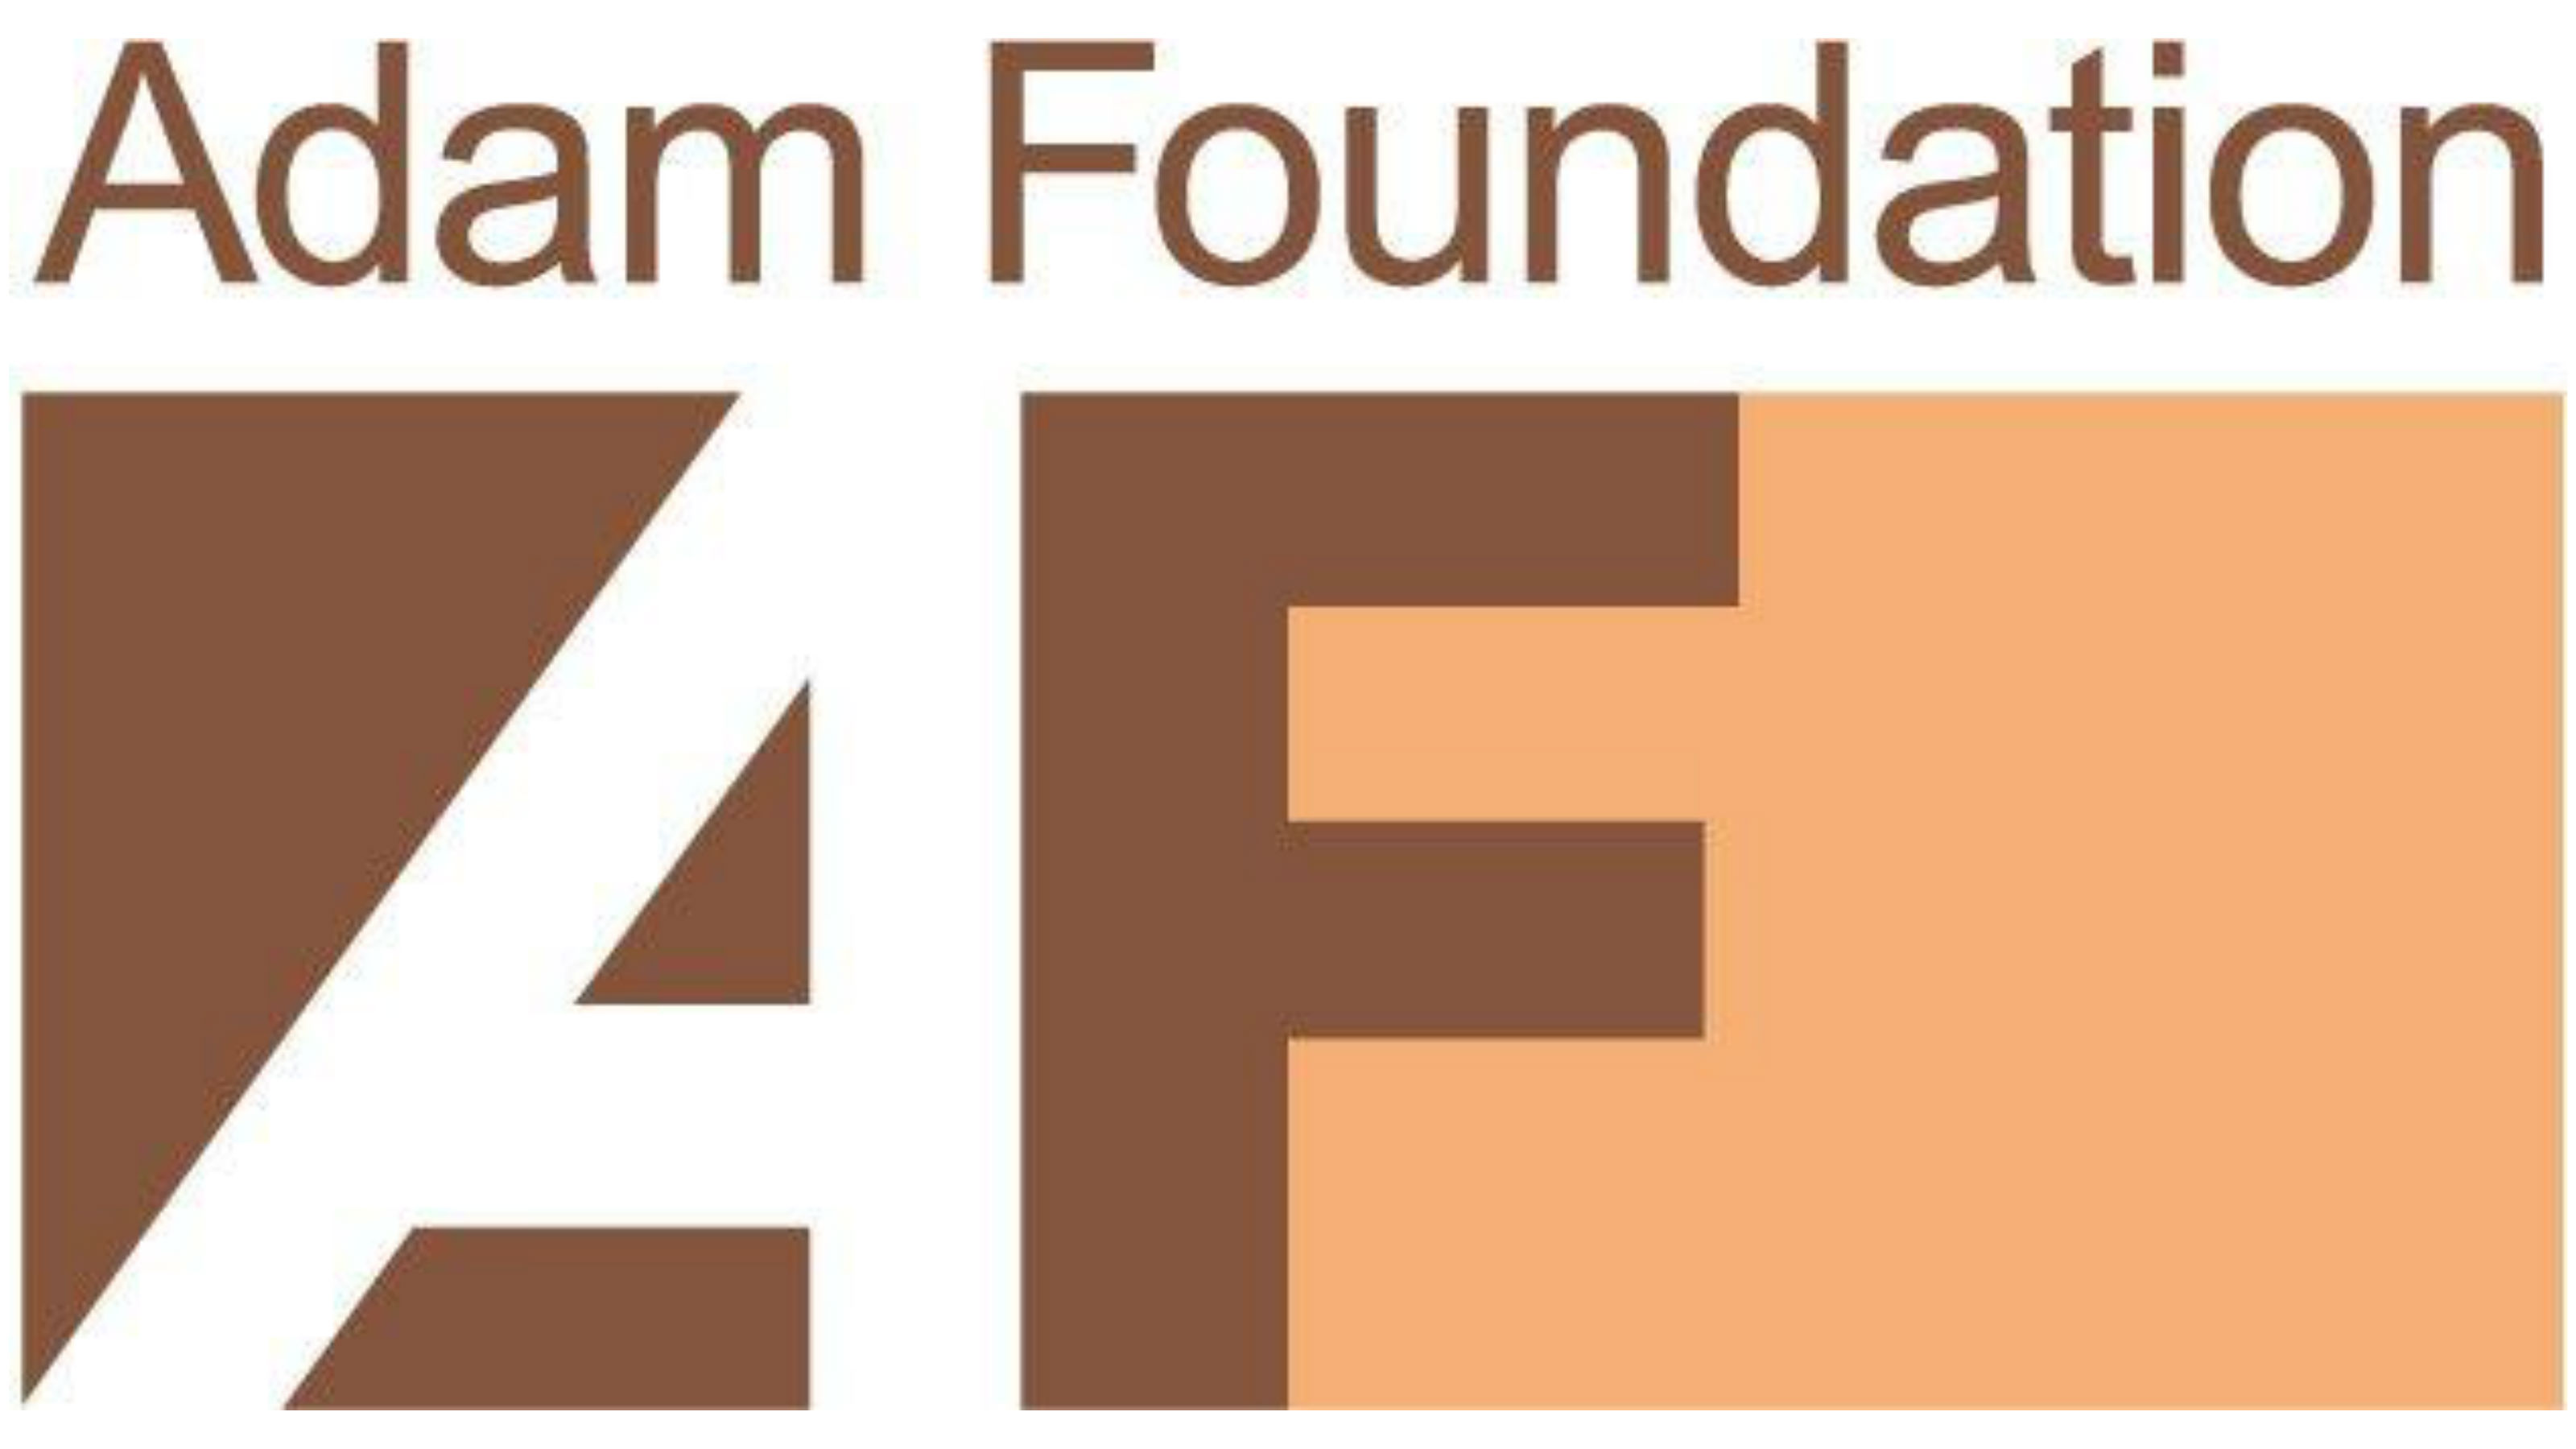 The Adam Foundation logo.